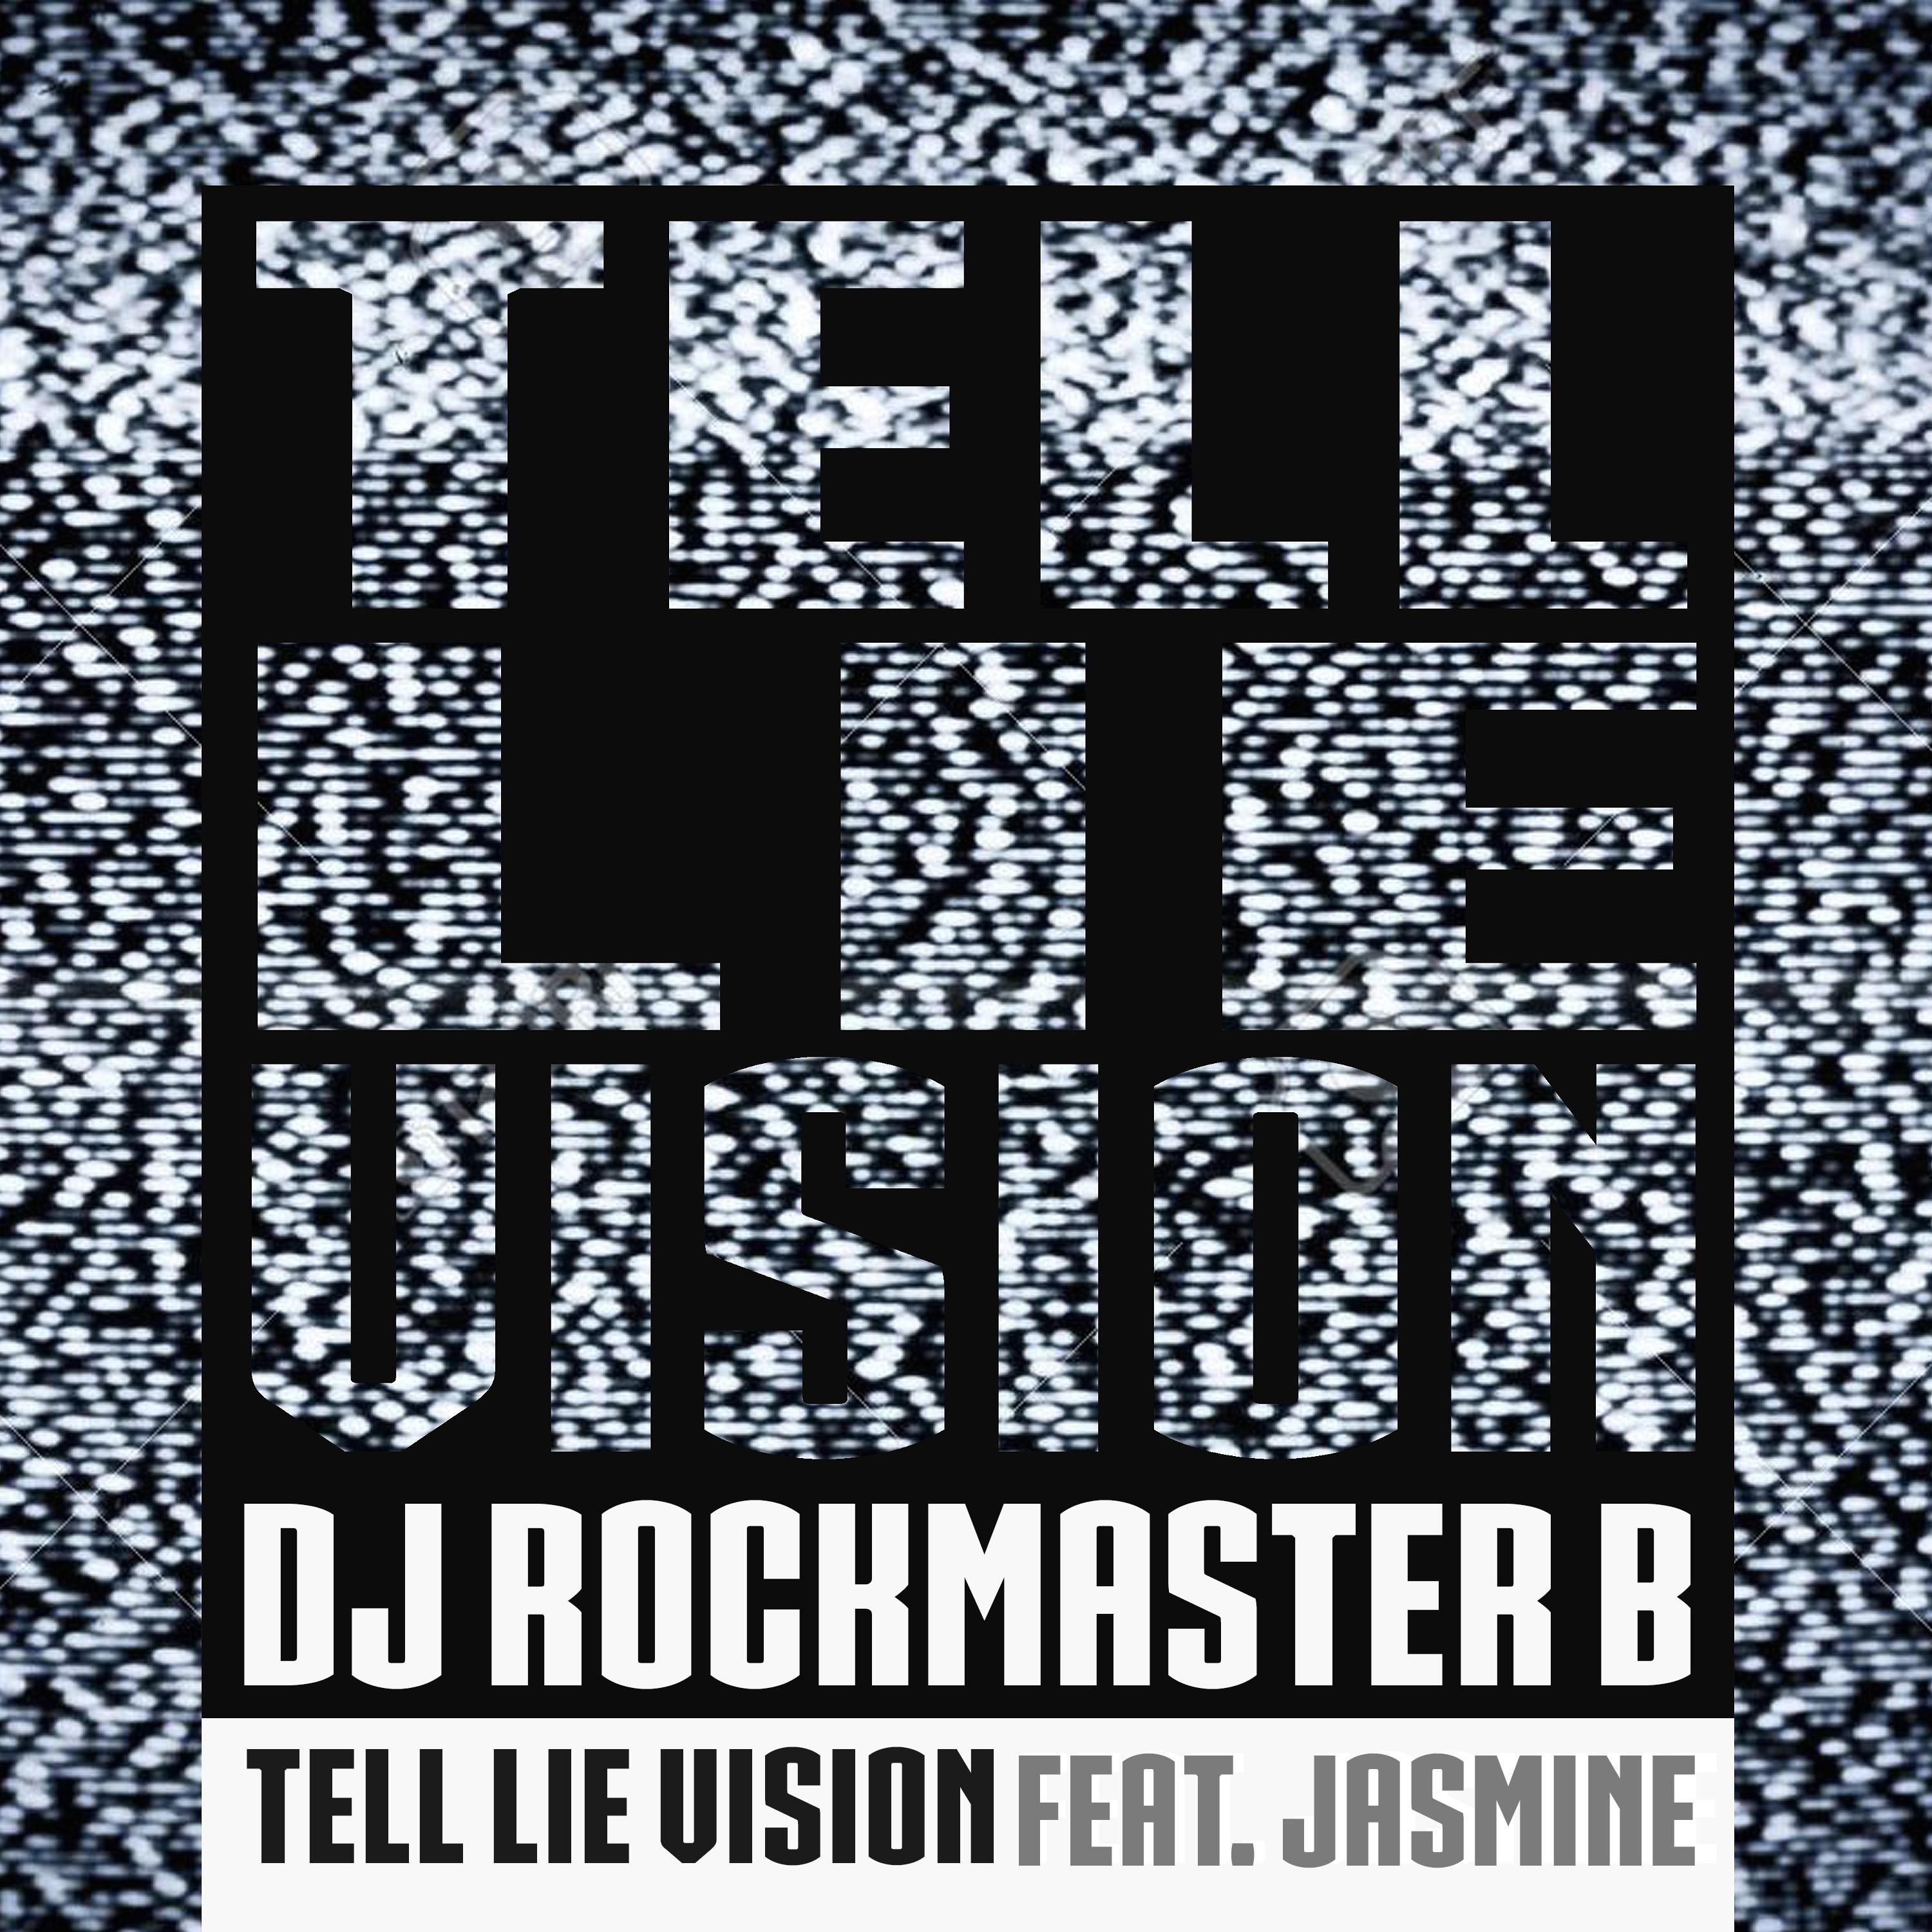 DJ Rockmaster B - Tell Lie Vision